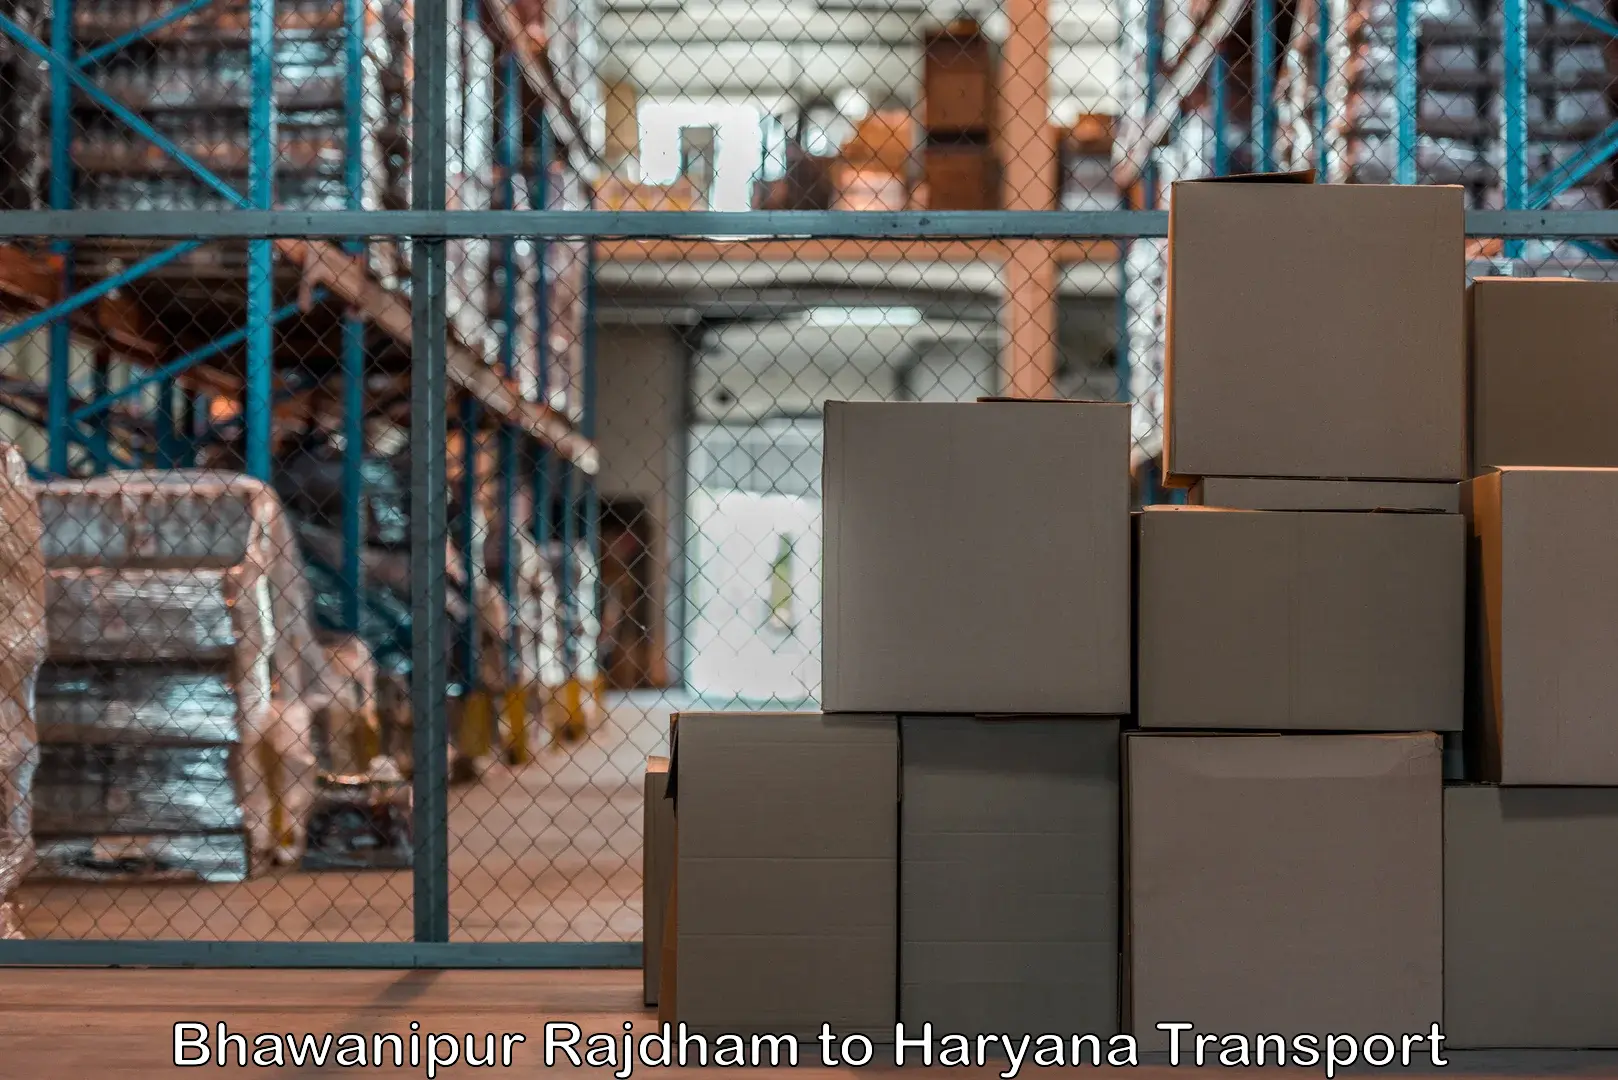 Goods delivery service Bhawanipur Rajdham to Gurugram